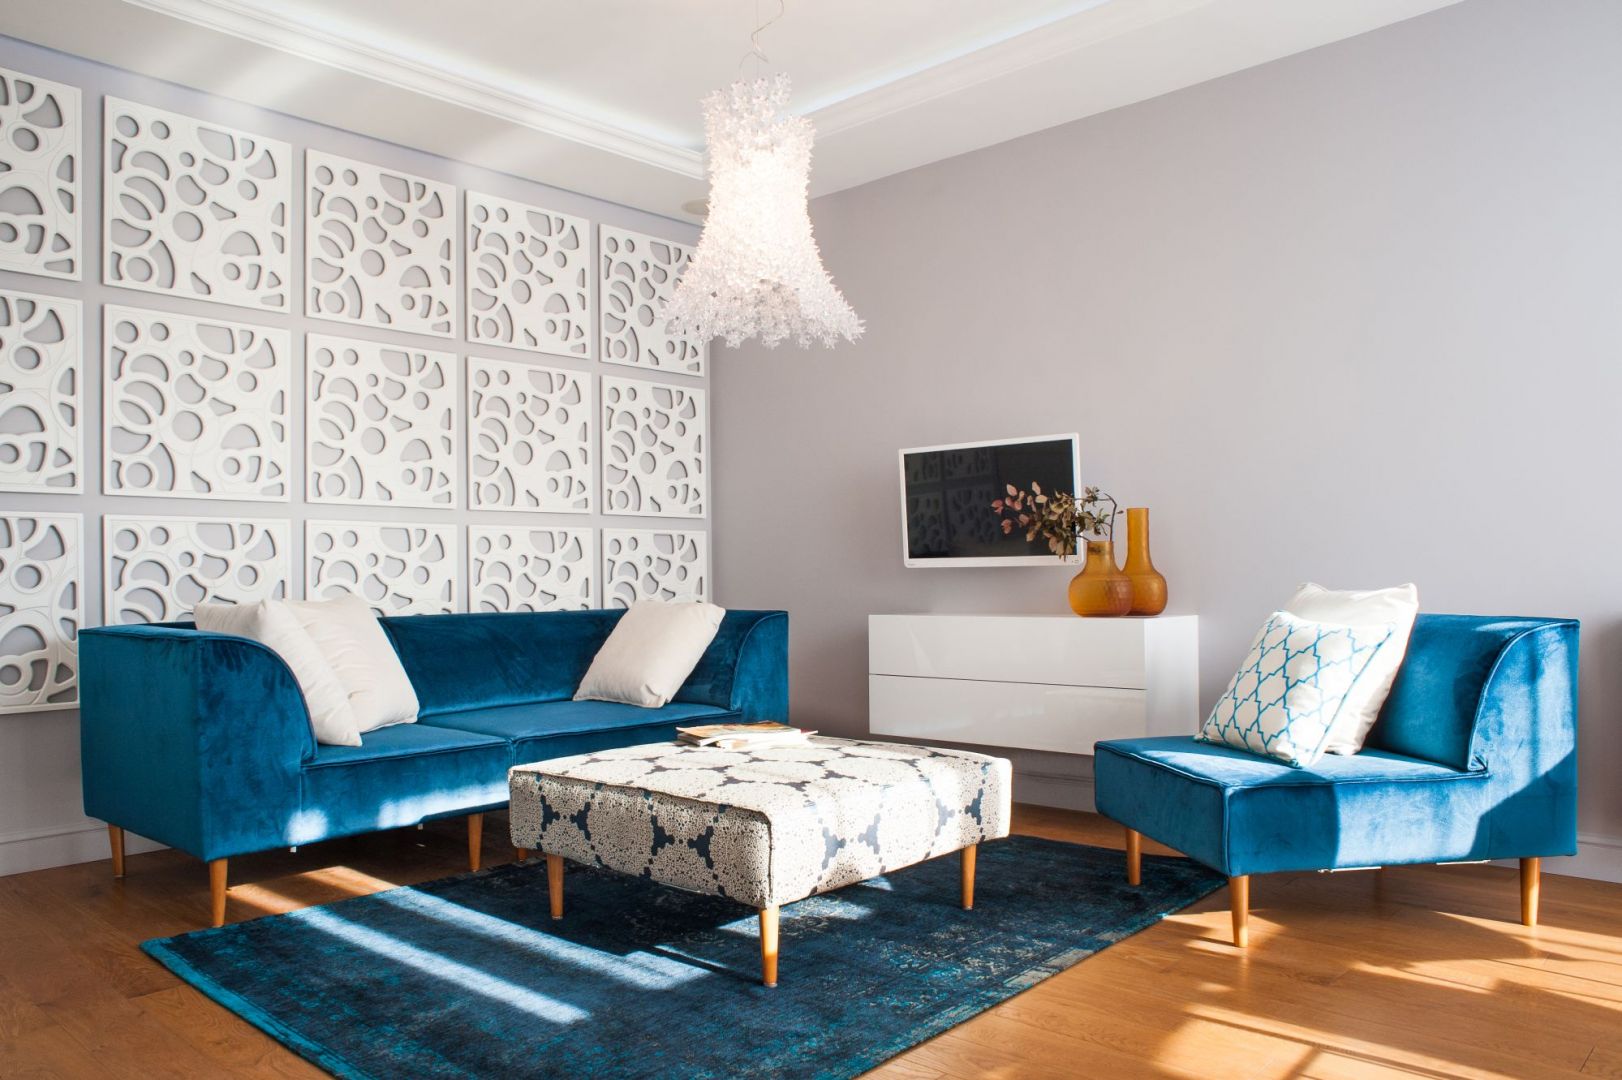 Meble tapicerowane miękką tkaniną w kolorze turkusowym, pięknie prezentuję się na tle białych ścian. Projekt: Arkadiusz Grzędzicki. Fot. Adam Ościłowski 